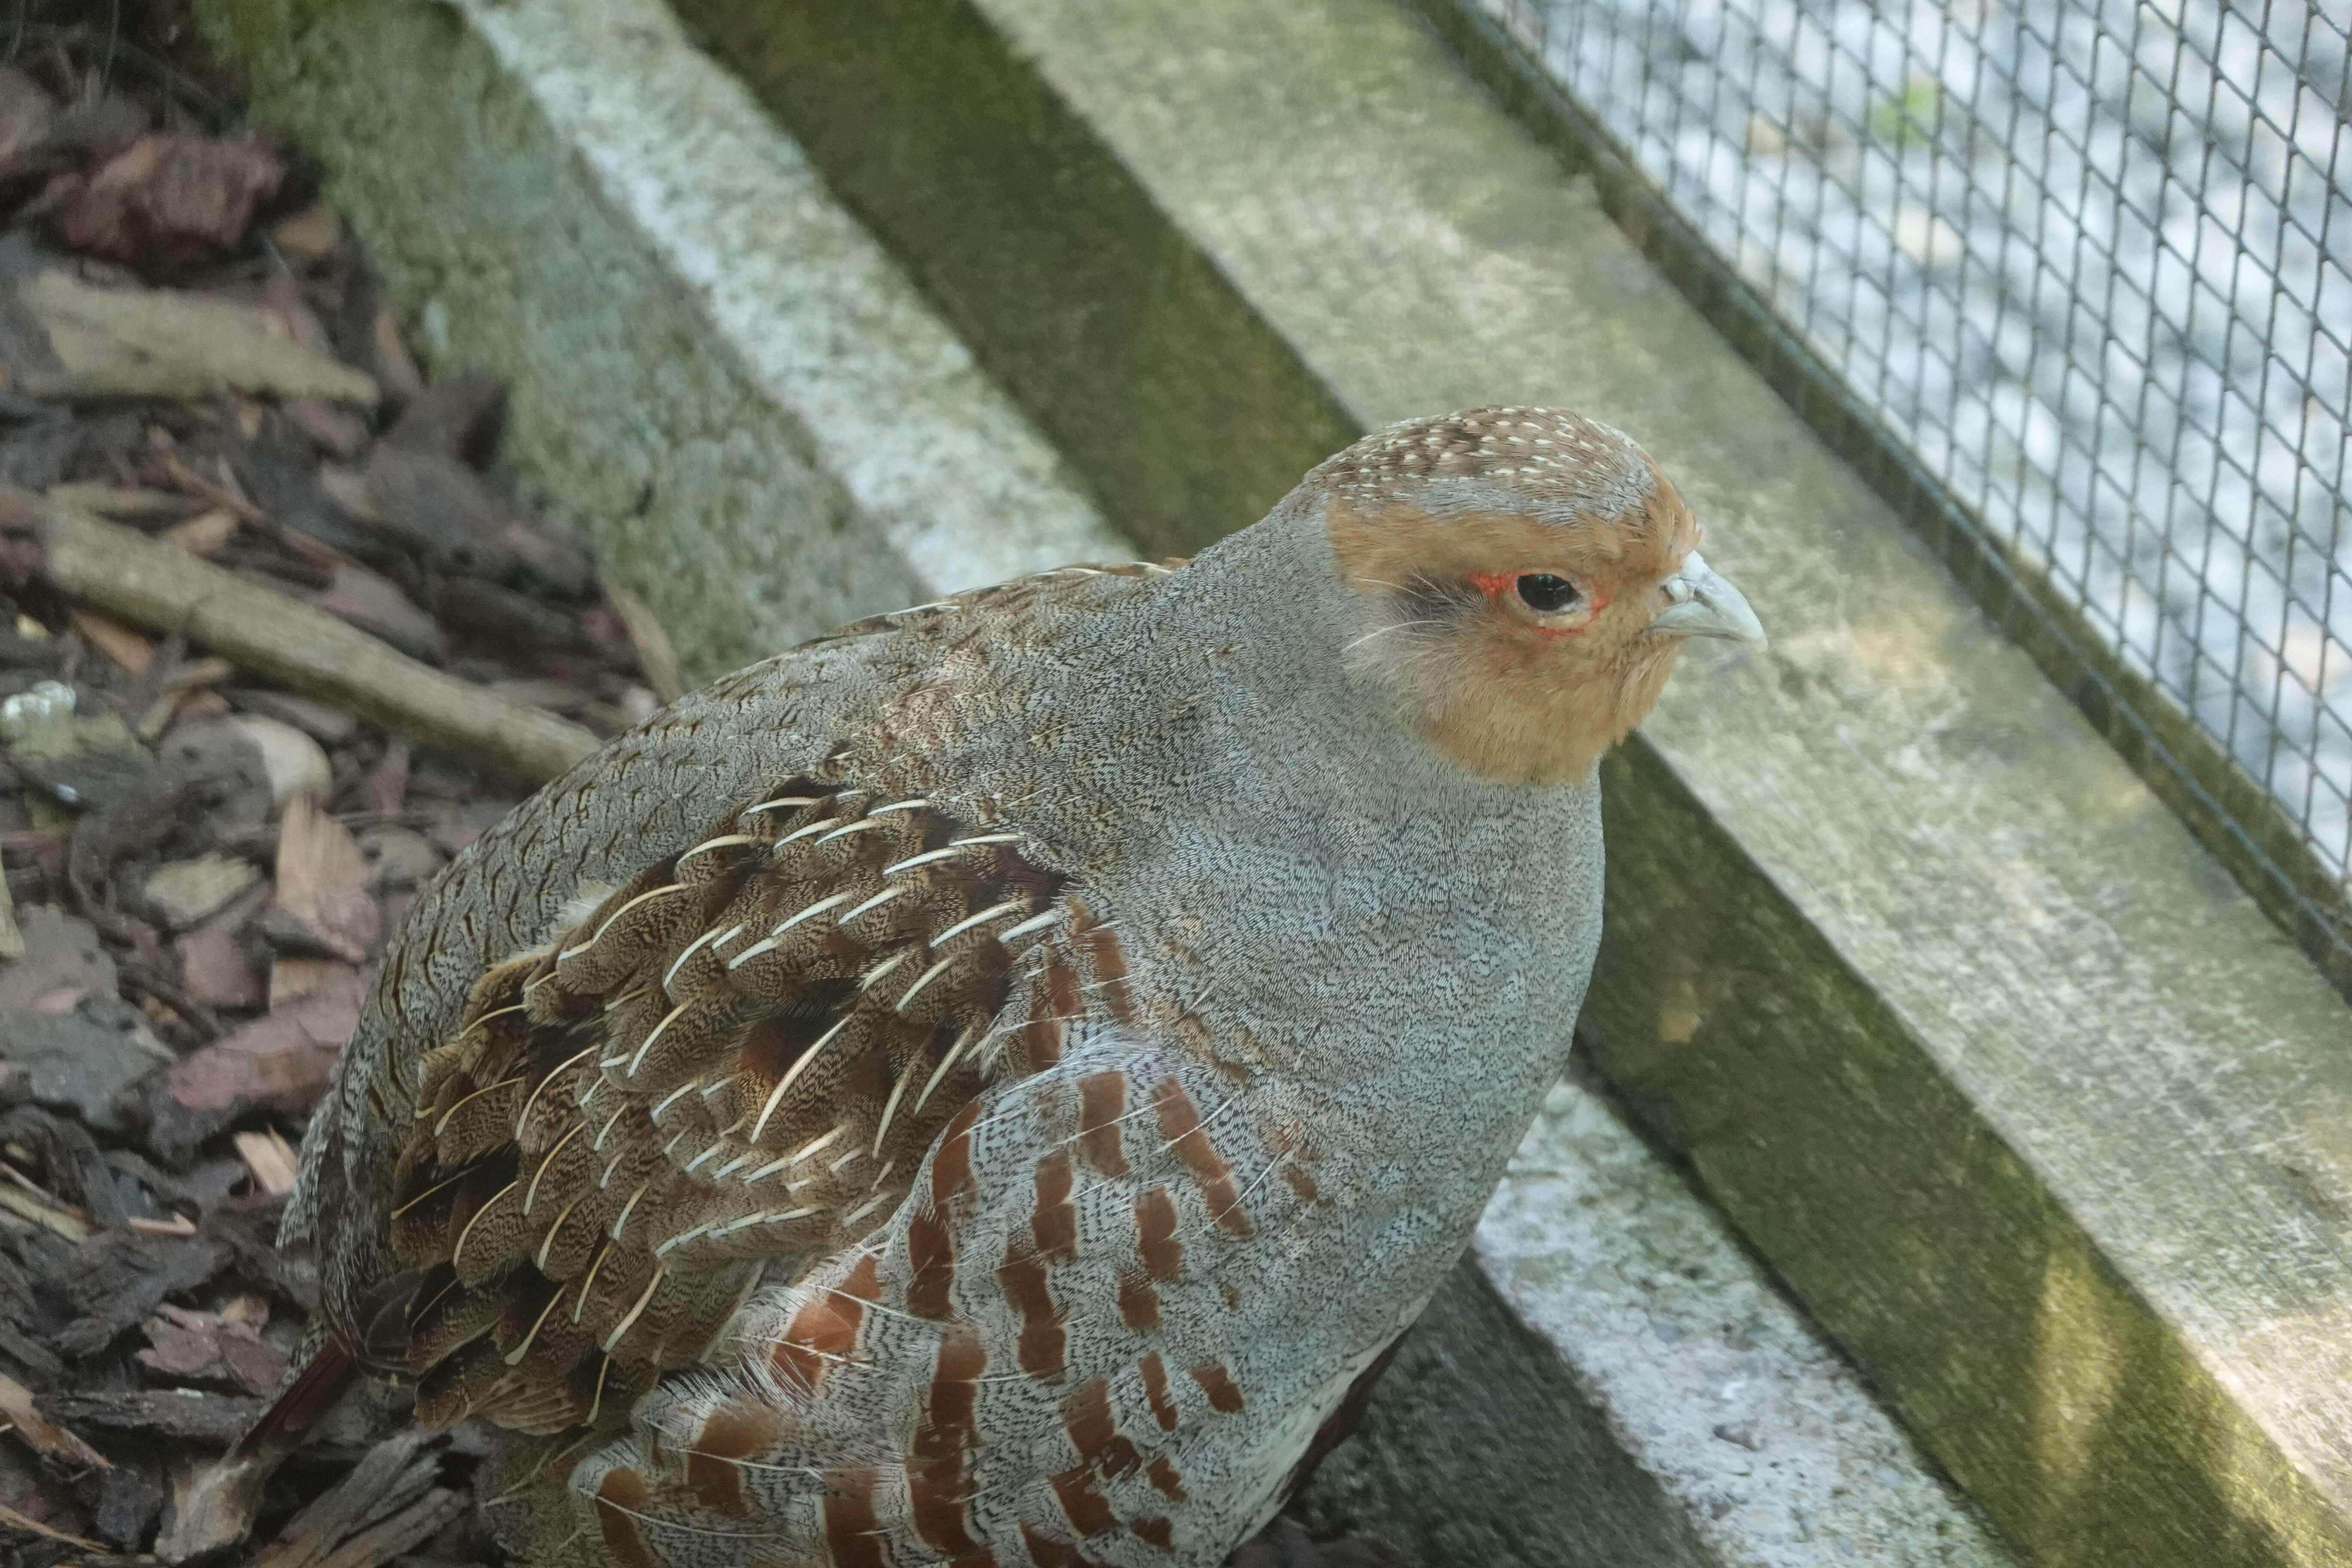 Image of Grey Peacock Pheasant